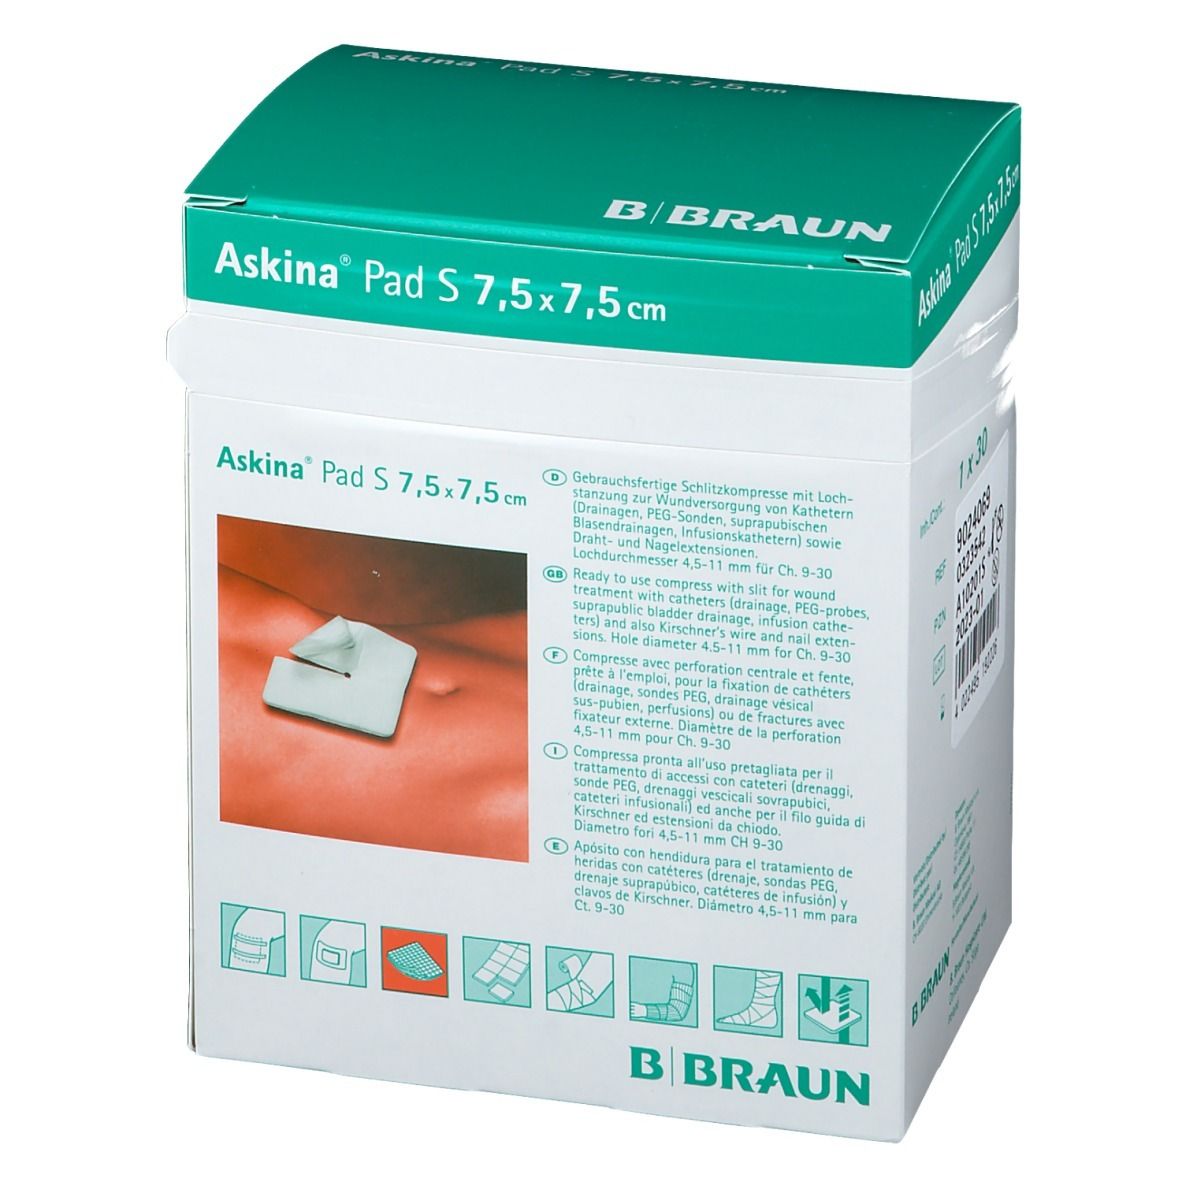 Askina® Pad S 7,5 x 7,5 cm